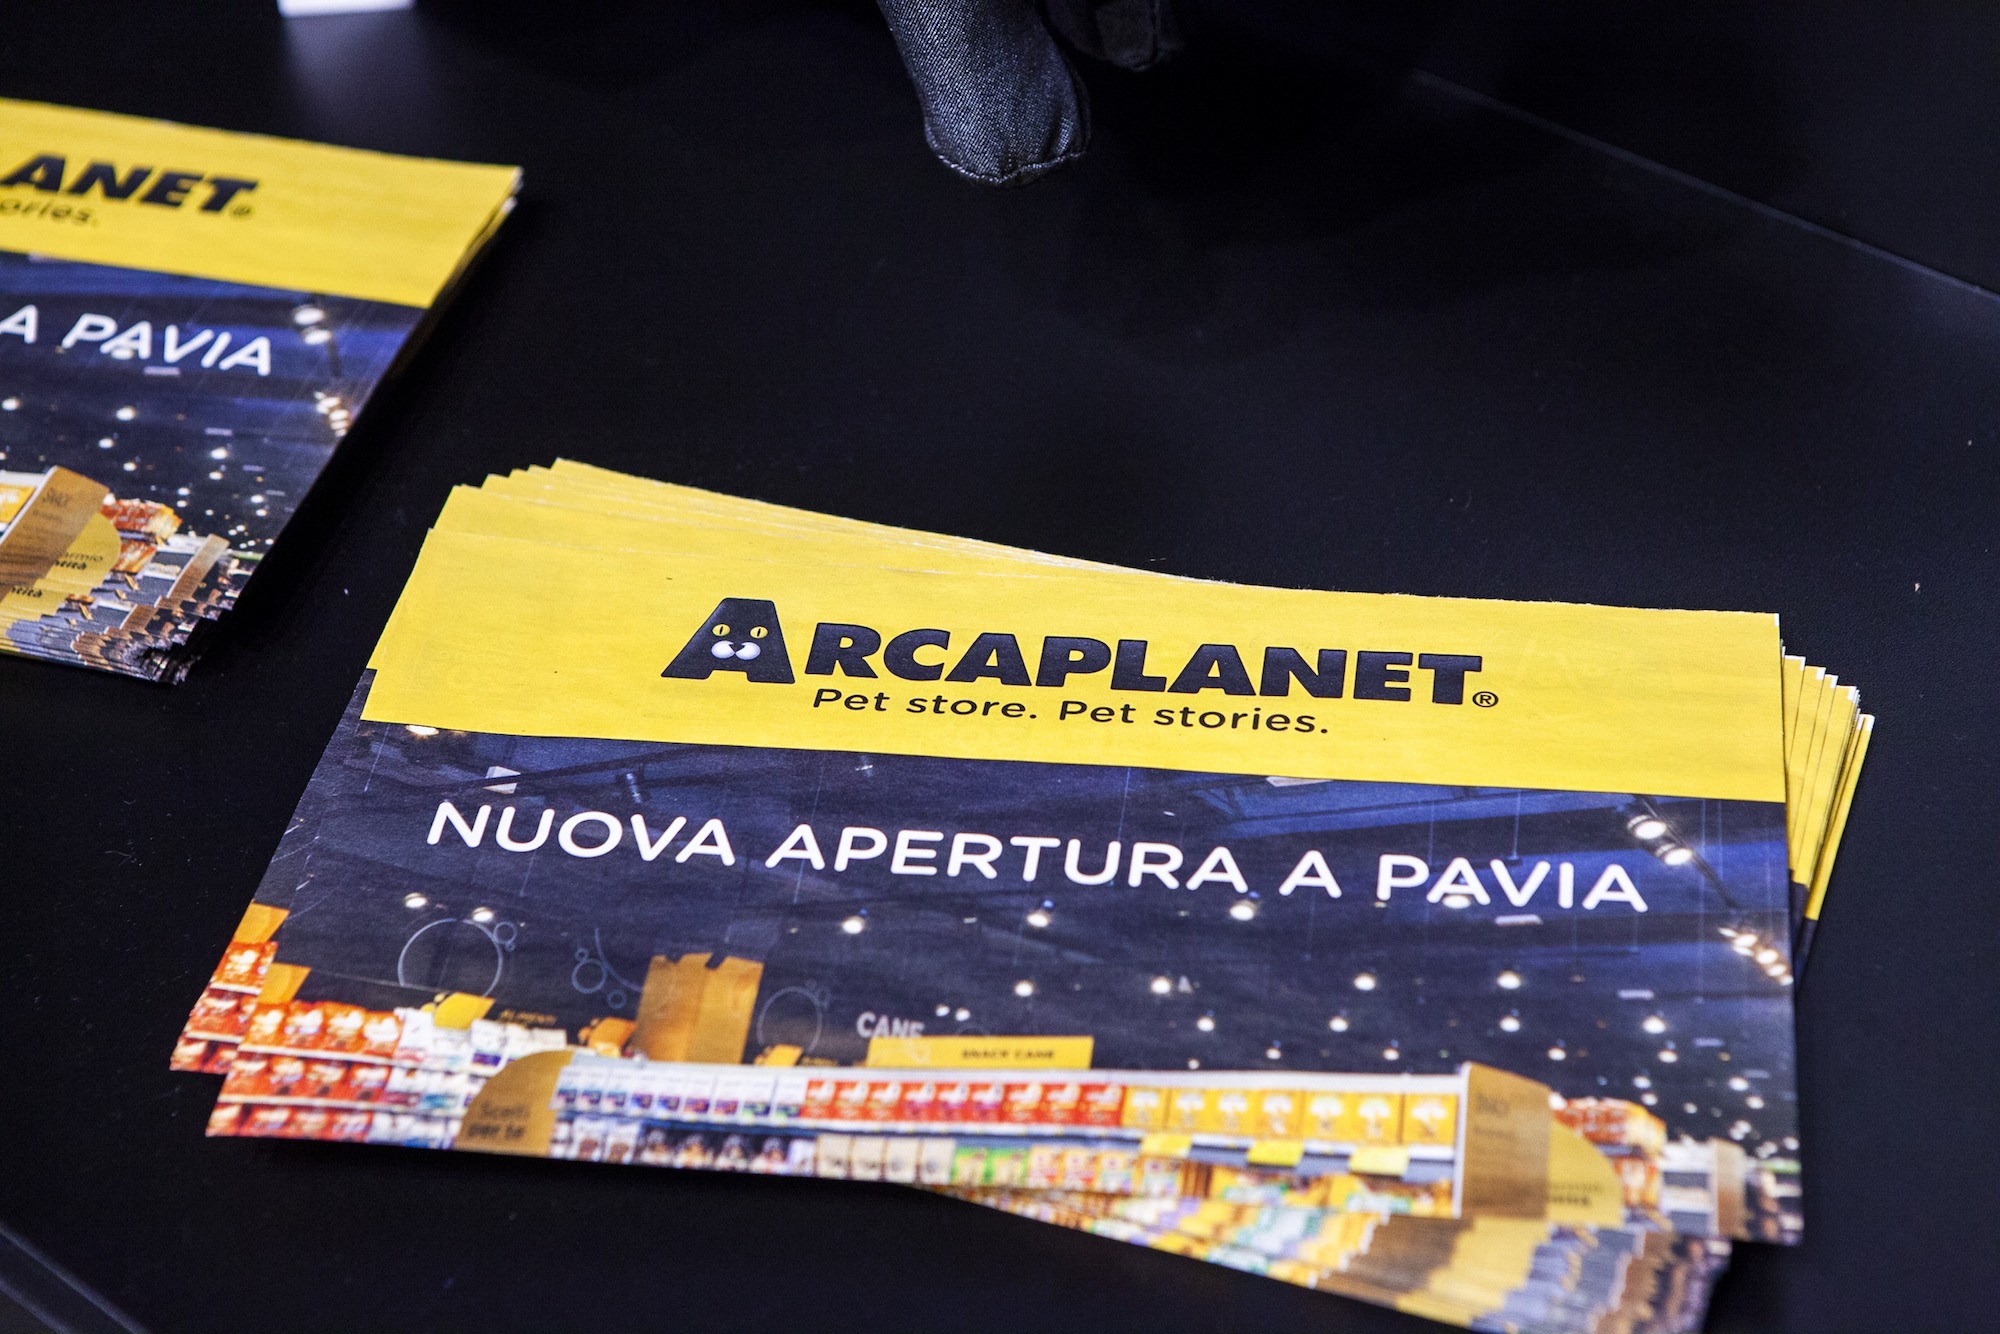 Raggiunta e oltrepassata quota 360 punti vendita per Arcaplanet!